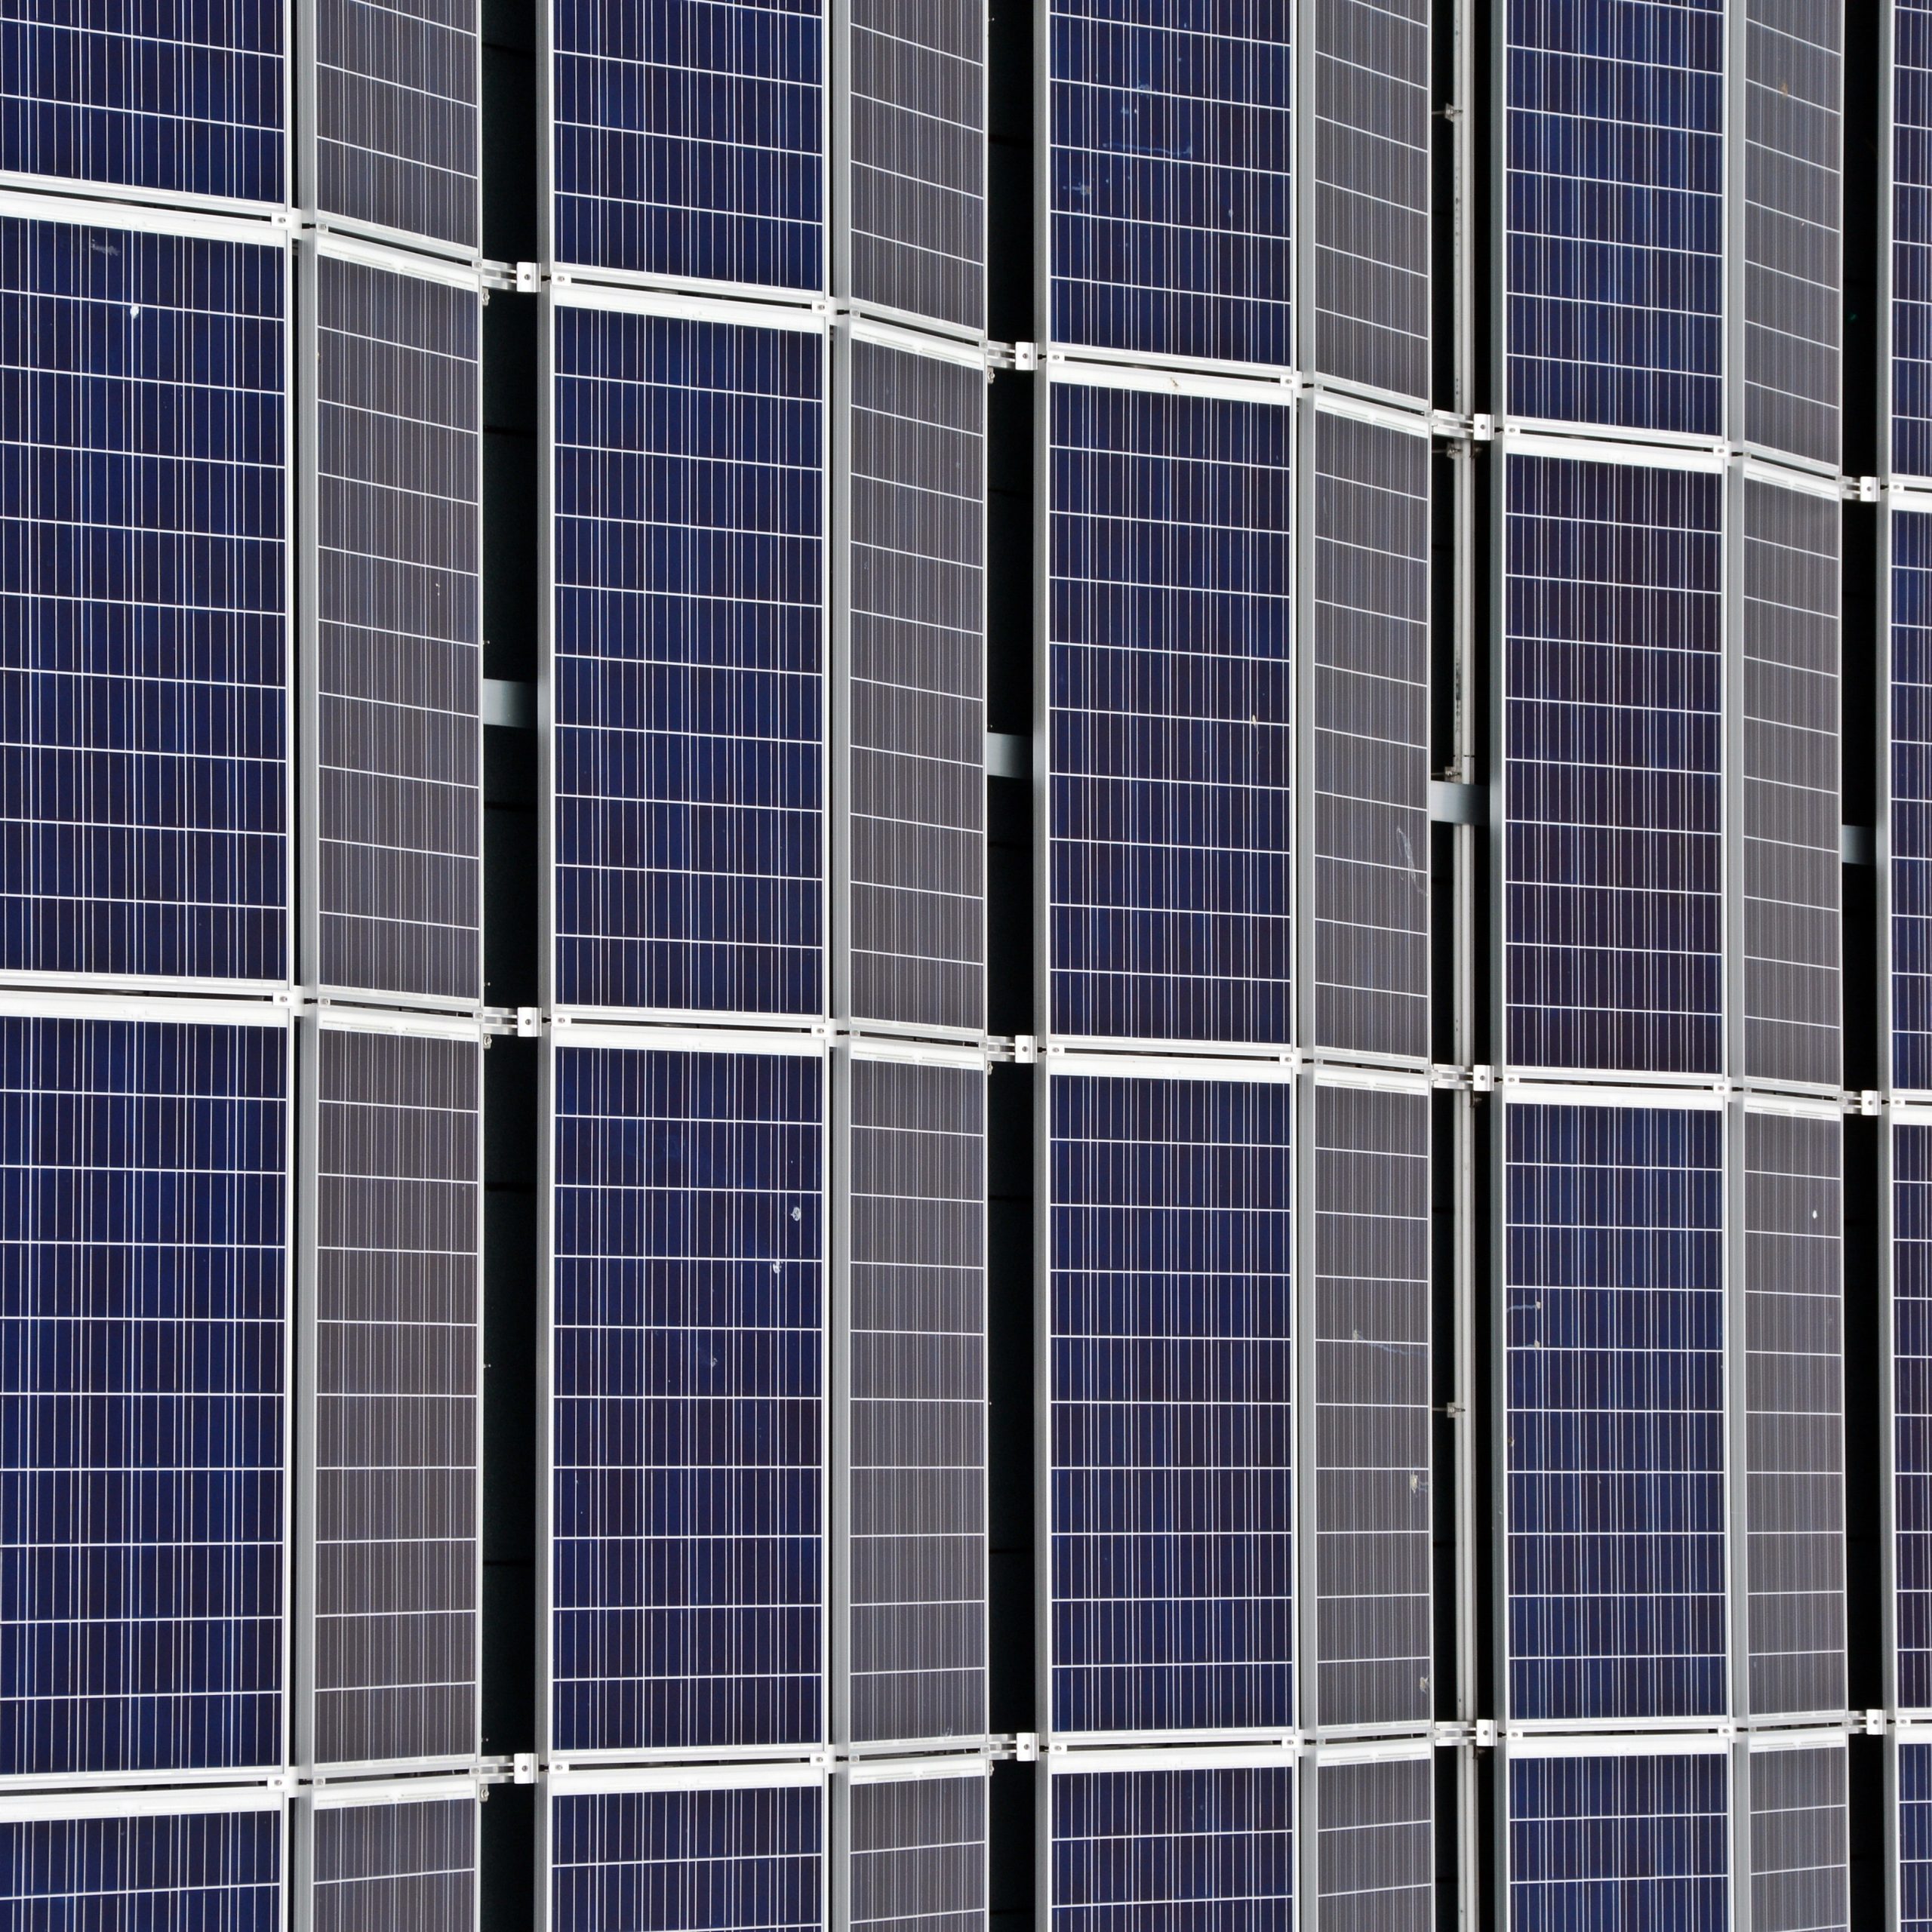 How Solar Companies Frame their Story to Raise Capital - Renewable energy